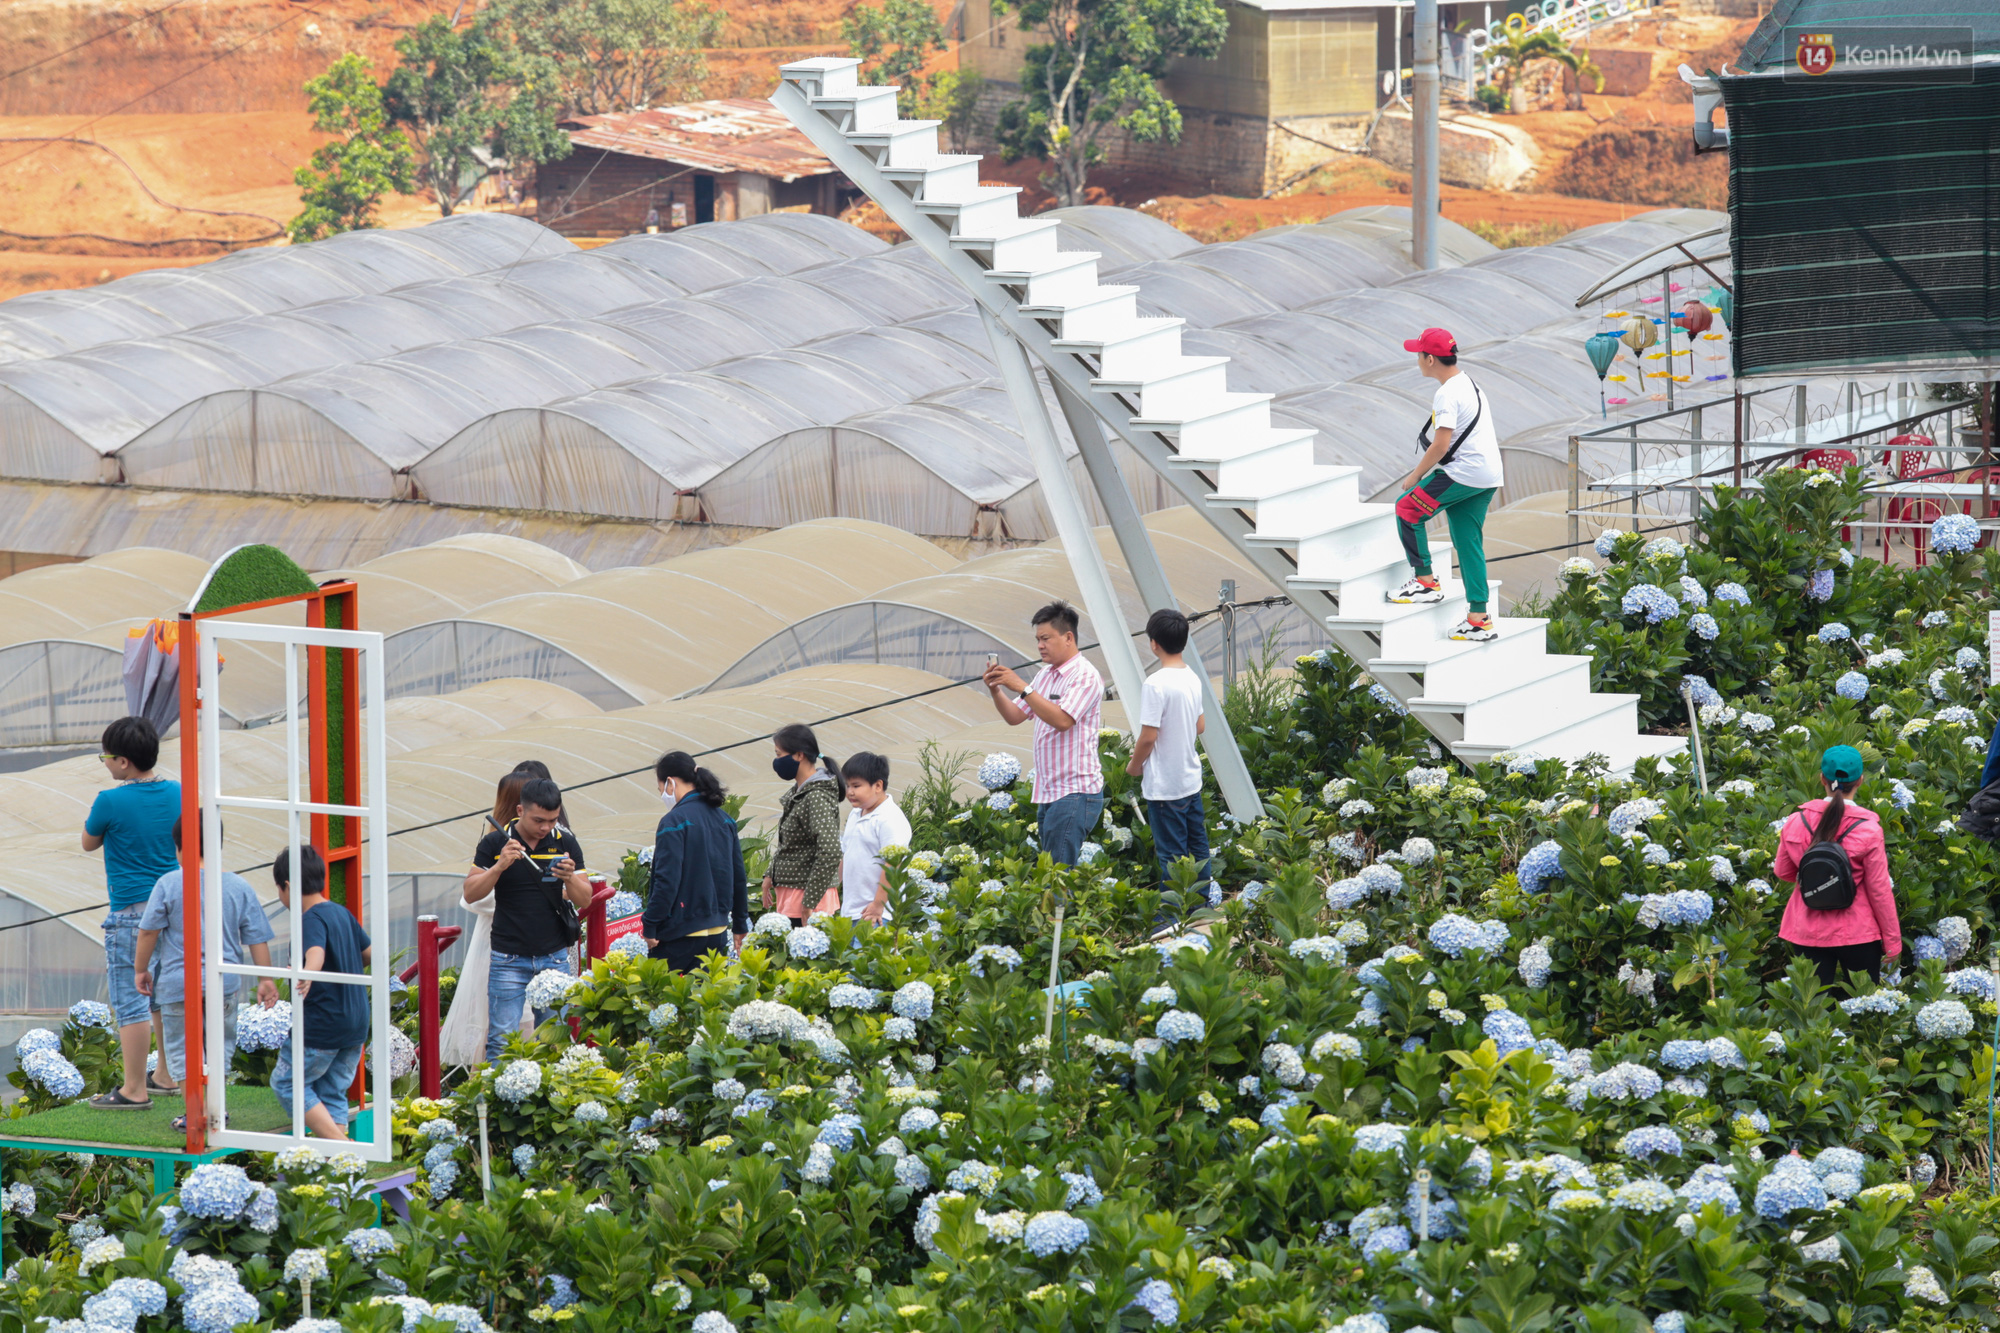 Vườn hoa hướng dương: Điểm sống ảo cực chất tại Sài Gòn